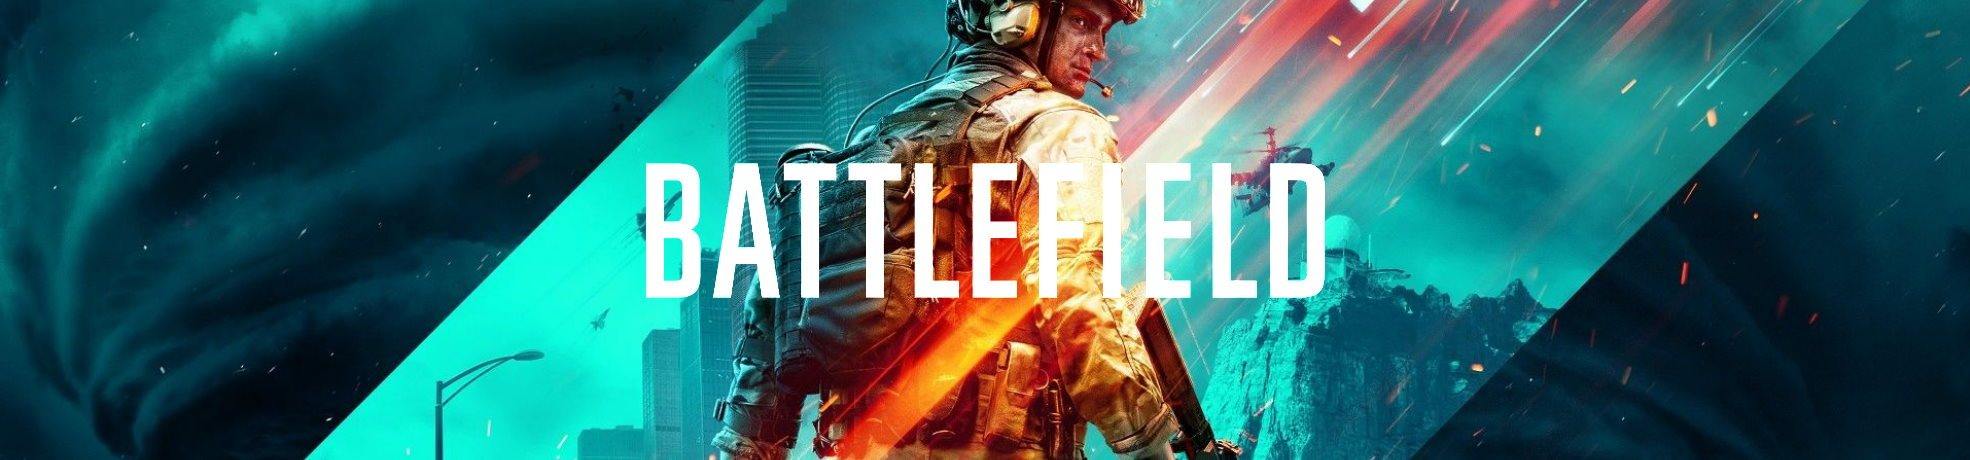 משחקי באטלפילד Battlefield - EXON - גיימינג ותוכנות - משחקים ותוכנות למחשב ולאקס בוקס!